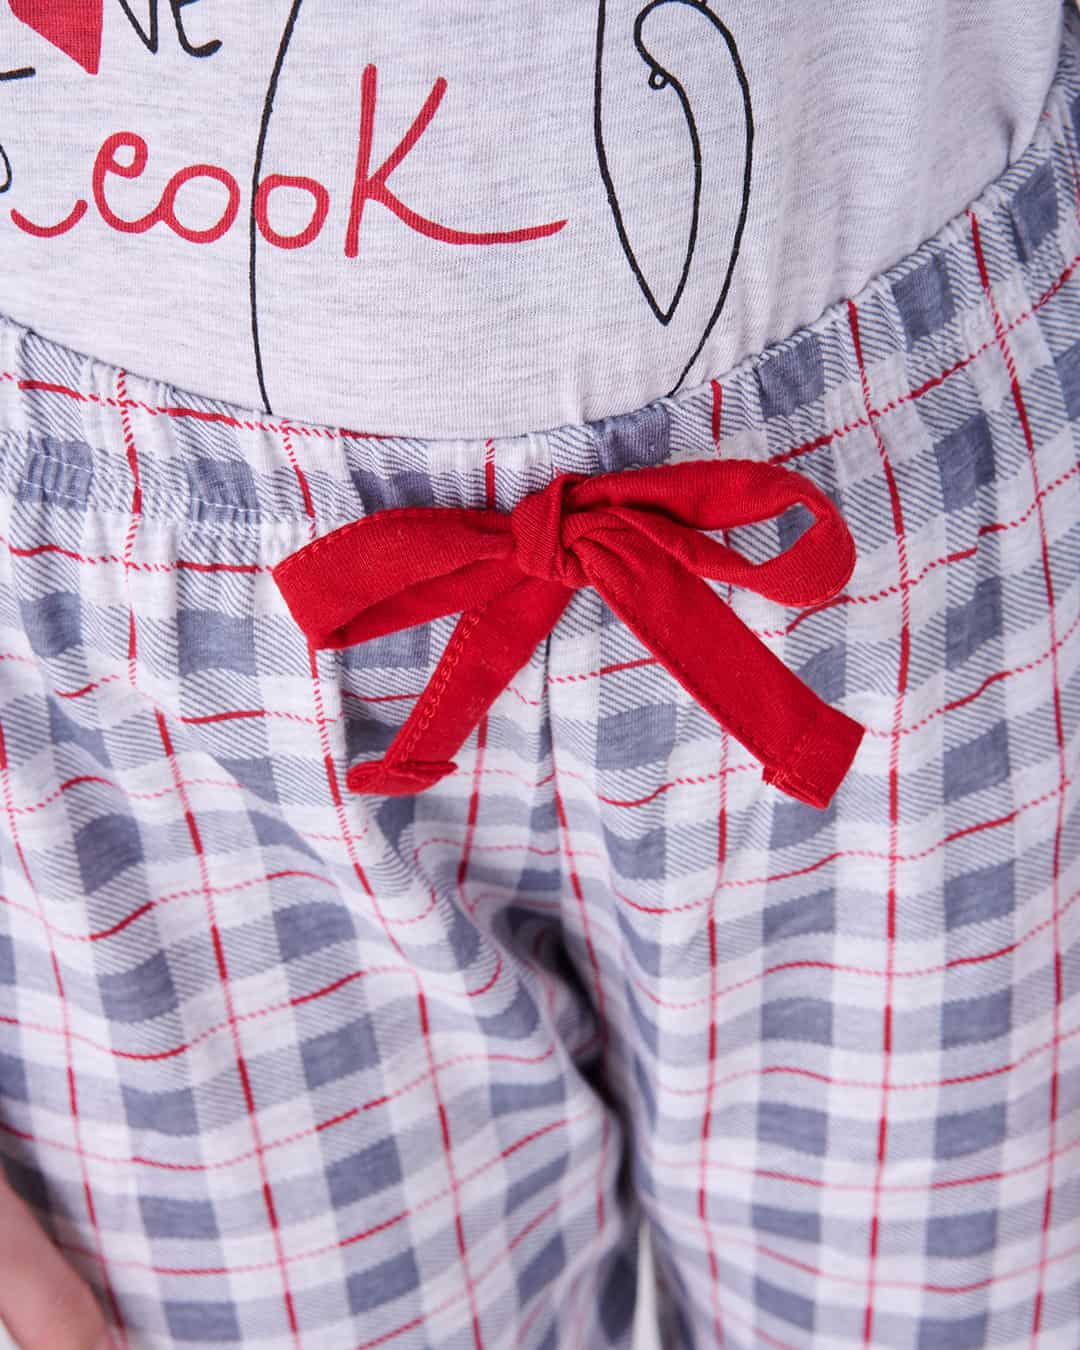 Dettaglio fiocco sul pantalone del pigiama lungo da bimba "COOK"